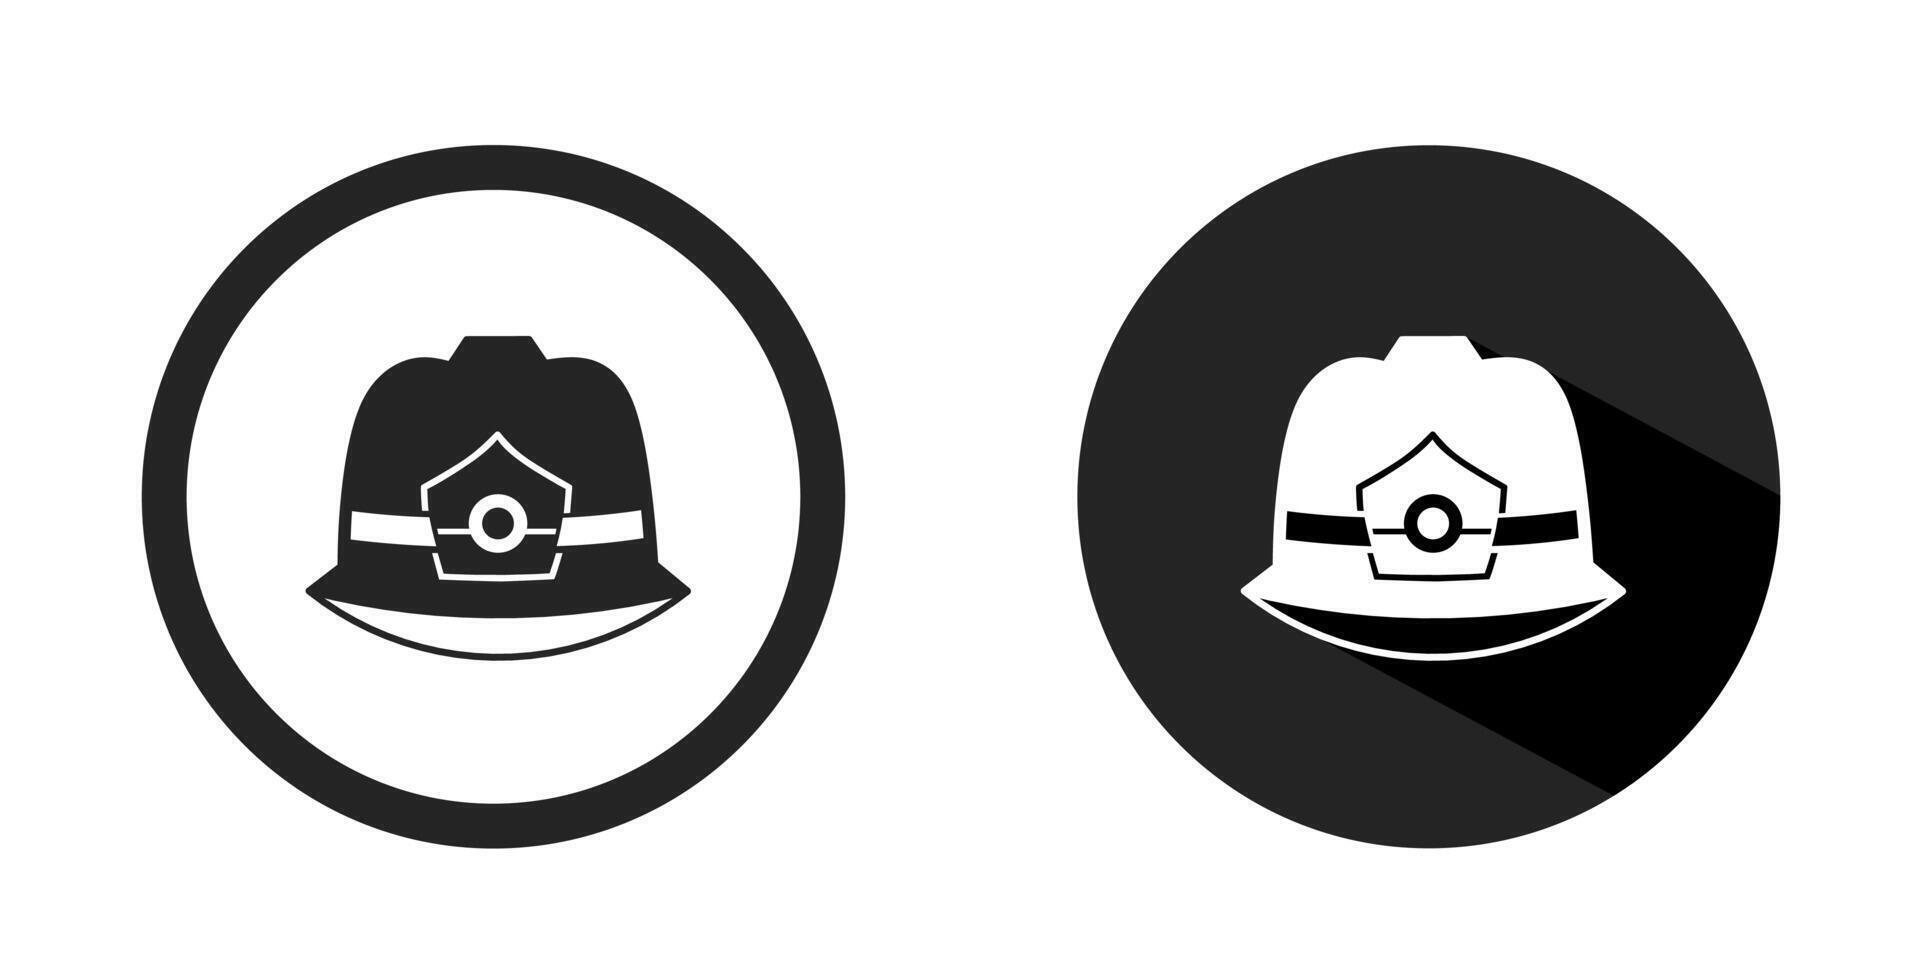 Helmet logos. Helmet icon vector design black color. Stock vector.